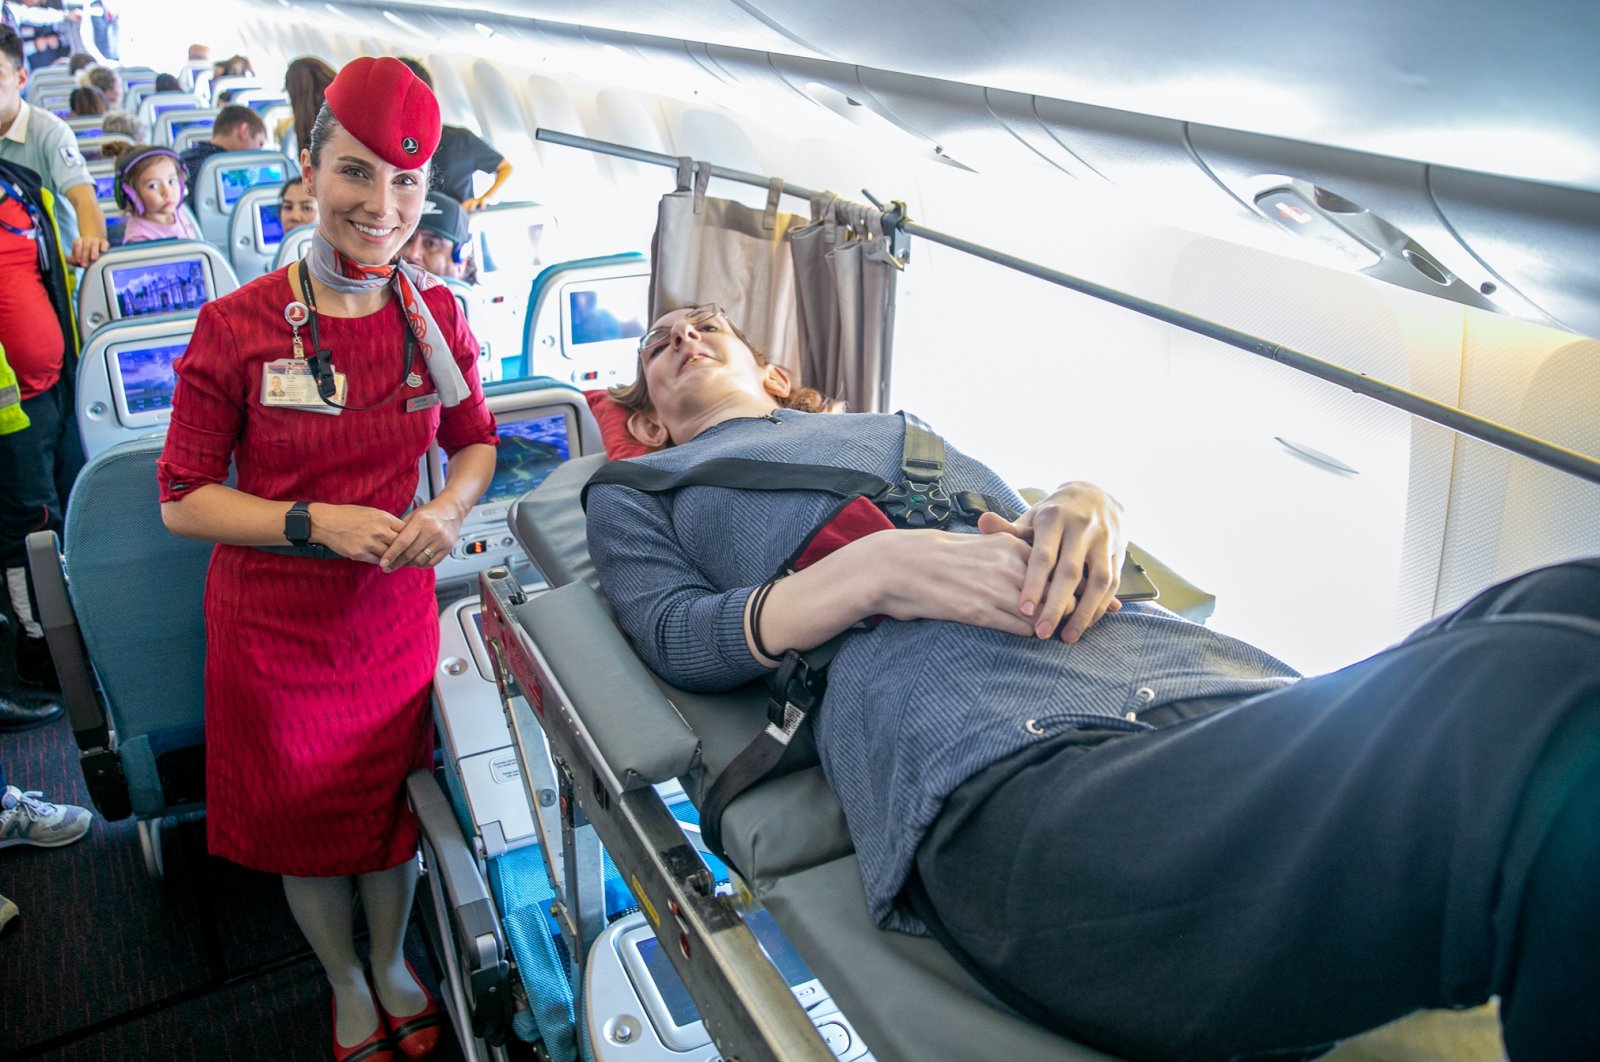 Turkish Airlines membantu wanita tertinggi di dunia terbang untuk pertama kalinya